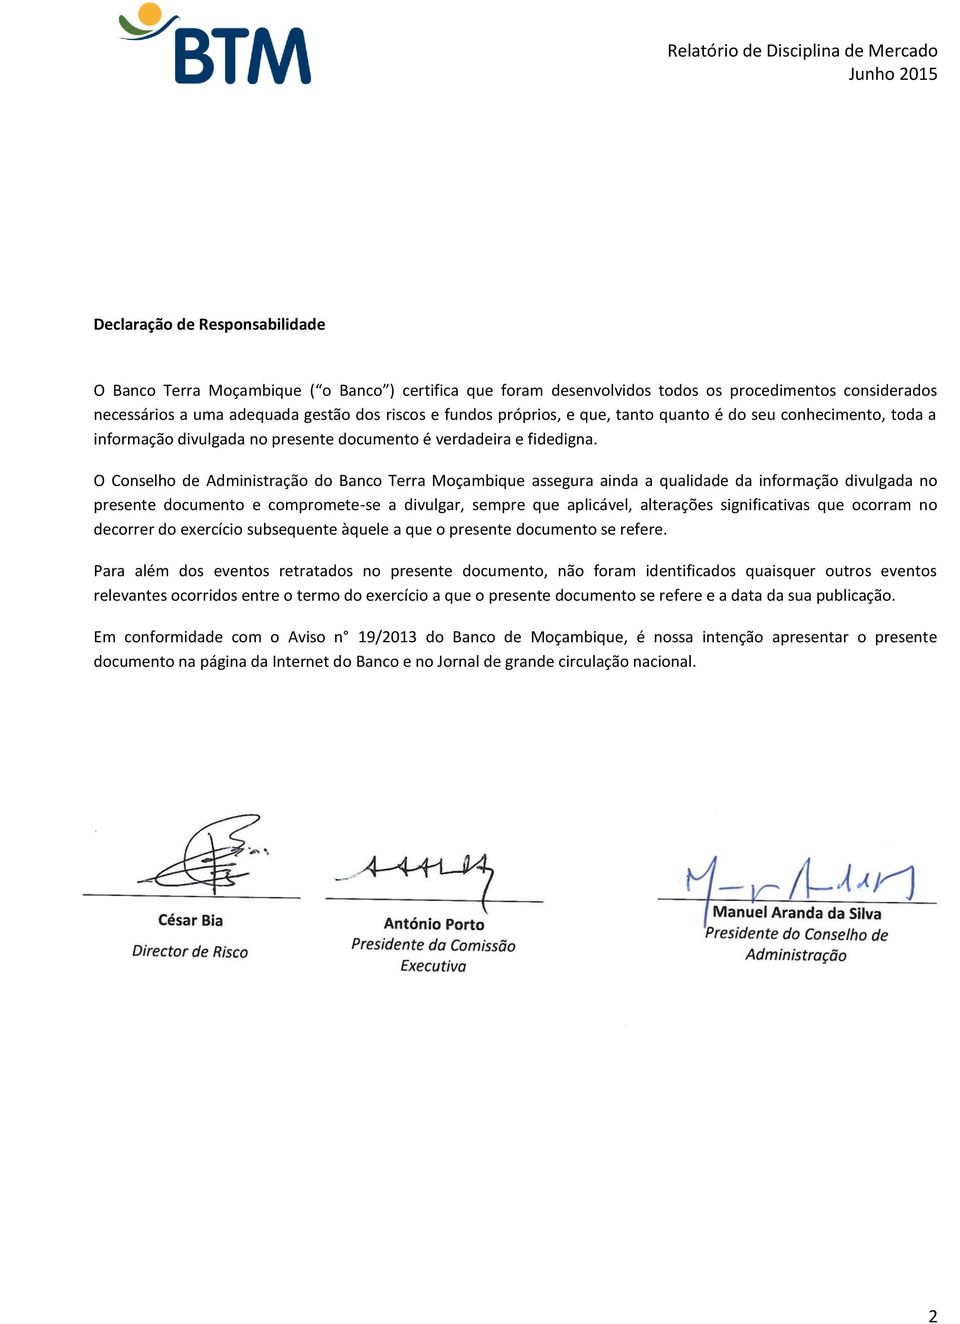 O Conselho de Administração do Banco Terra Moçambique assegura ainda a qualidade da informação divulgada no presente documento e compromete-se a divulgar, sempre que aplicável, alterações